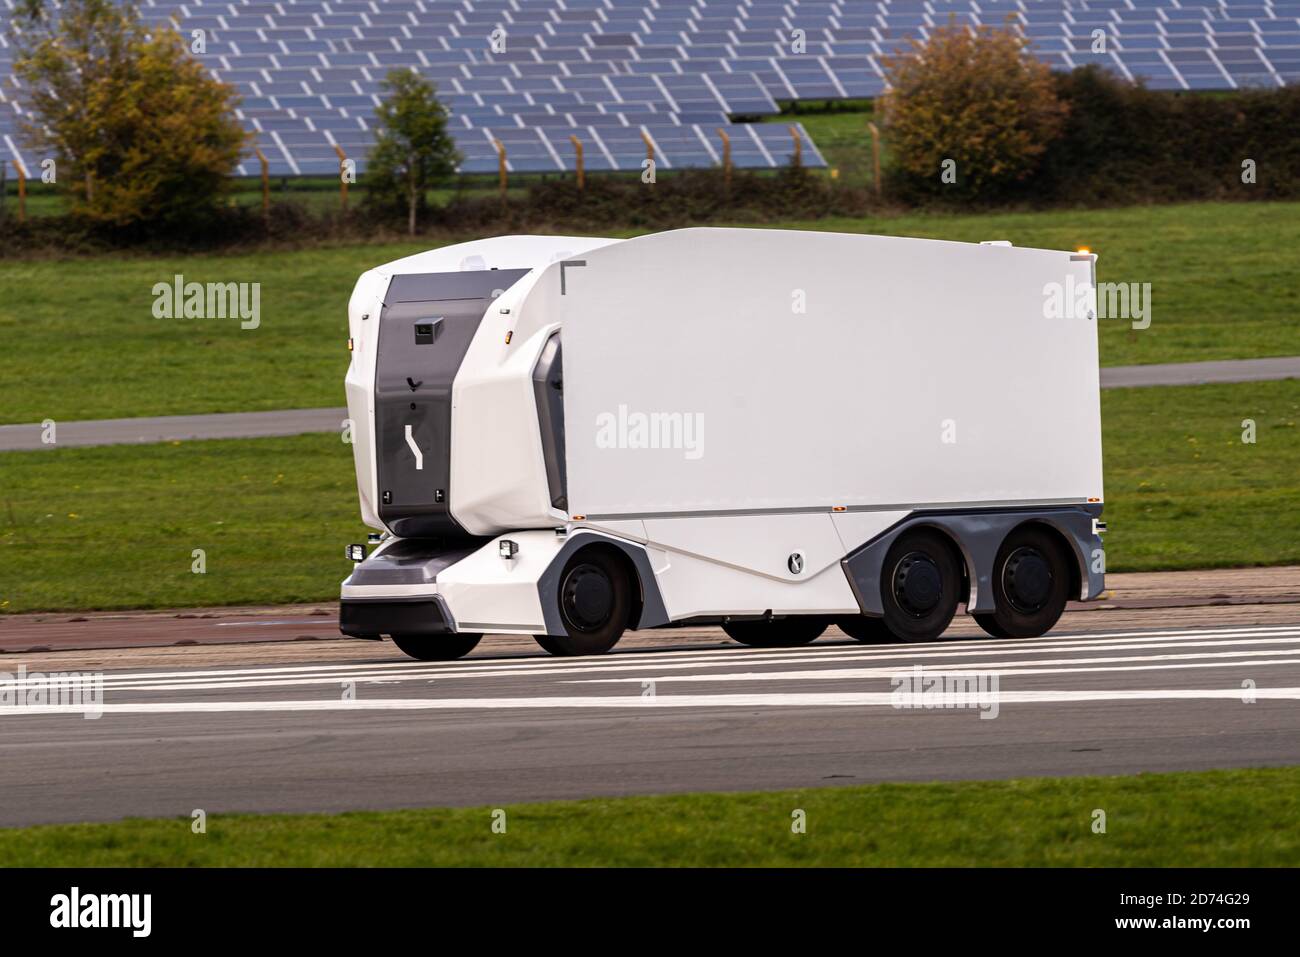 Un camion électrique sans conducteur suédois Einride passe devant des panneaux solaires, piste d'essai Top Gear, aérodrome de Dunsfold, Surrey, Royaume-Uni Banque D'Images